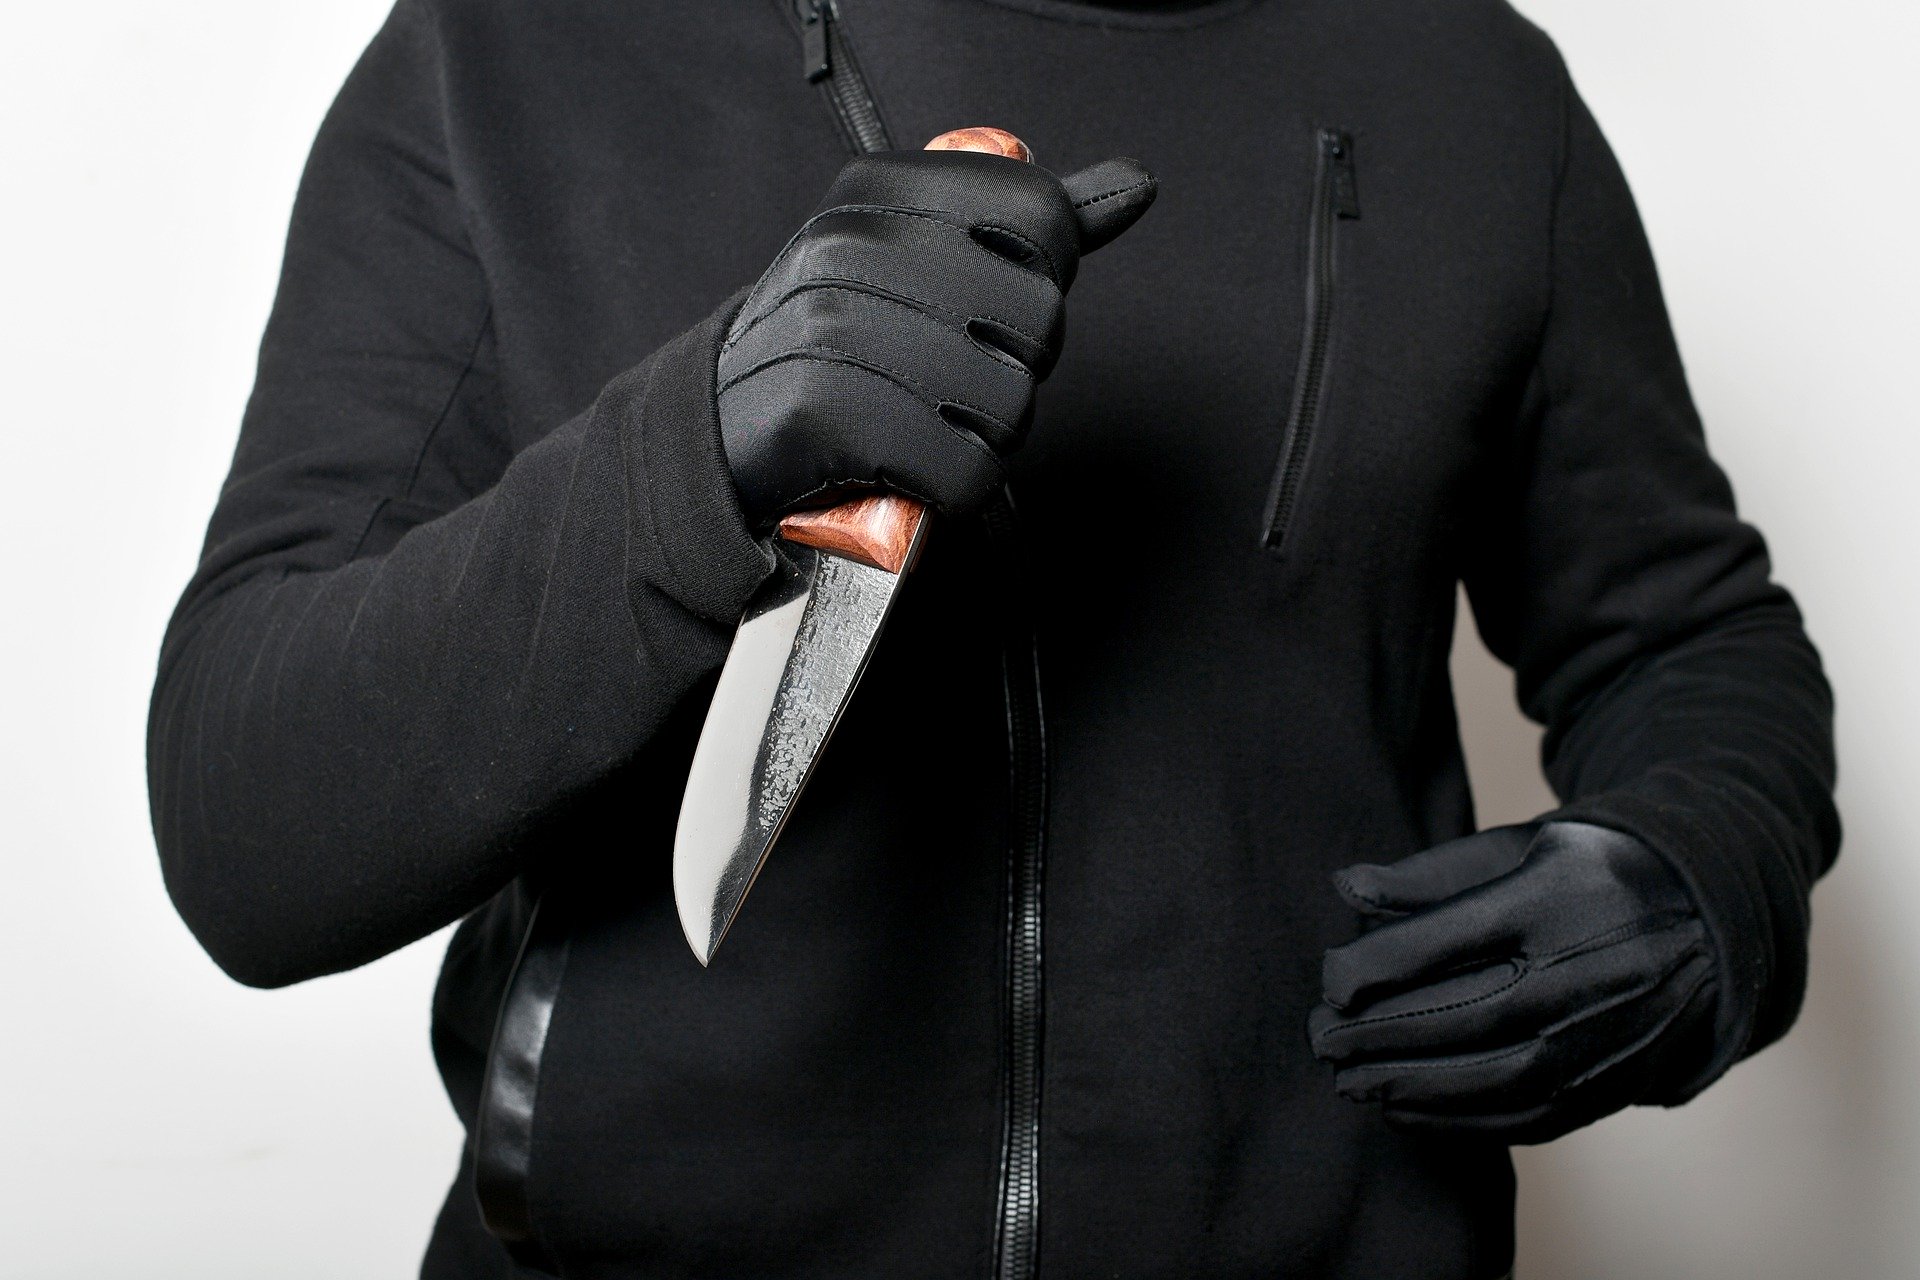 Грабитель с ножом украл телефон из салона связи